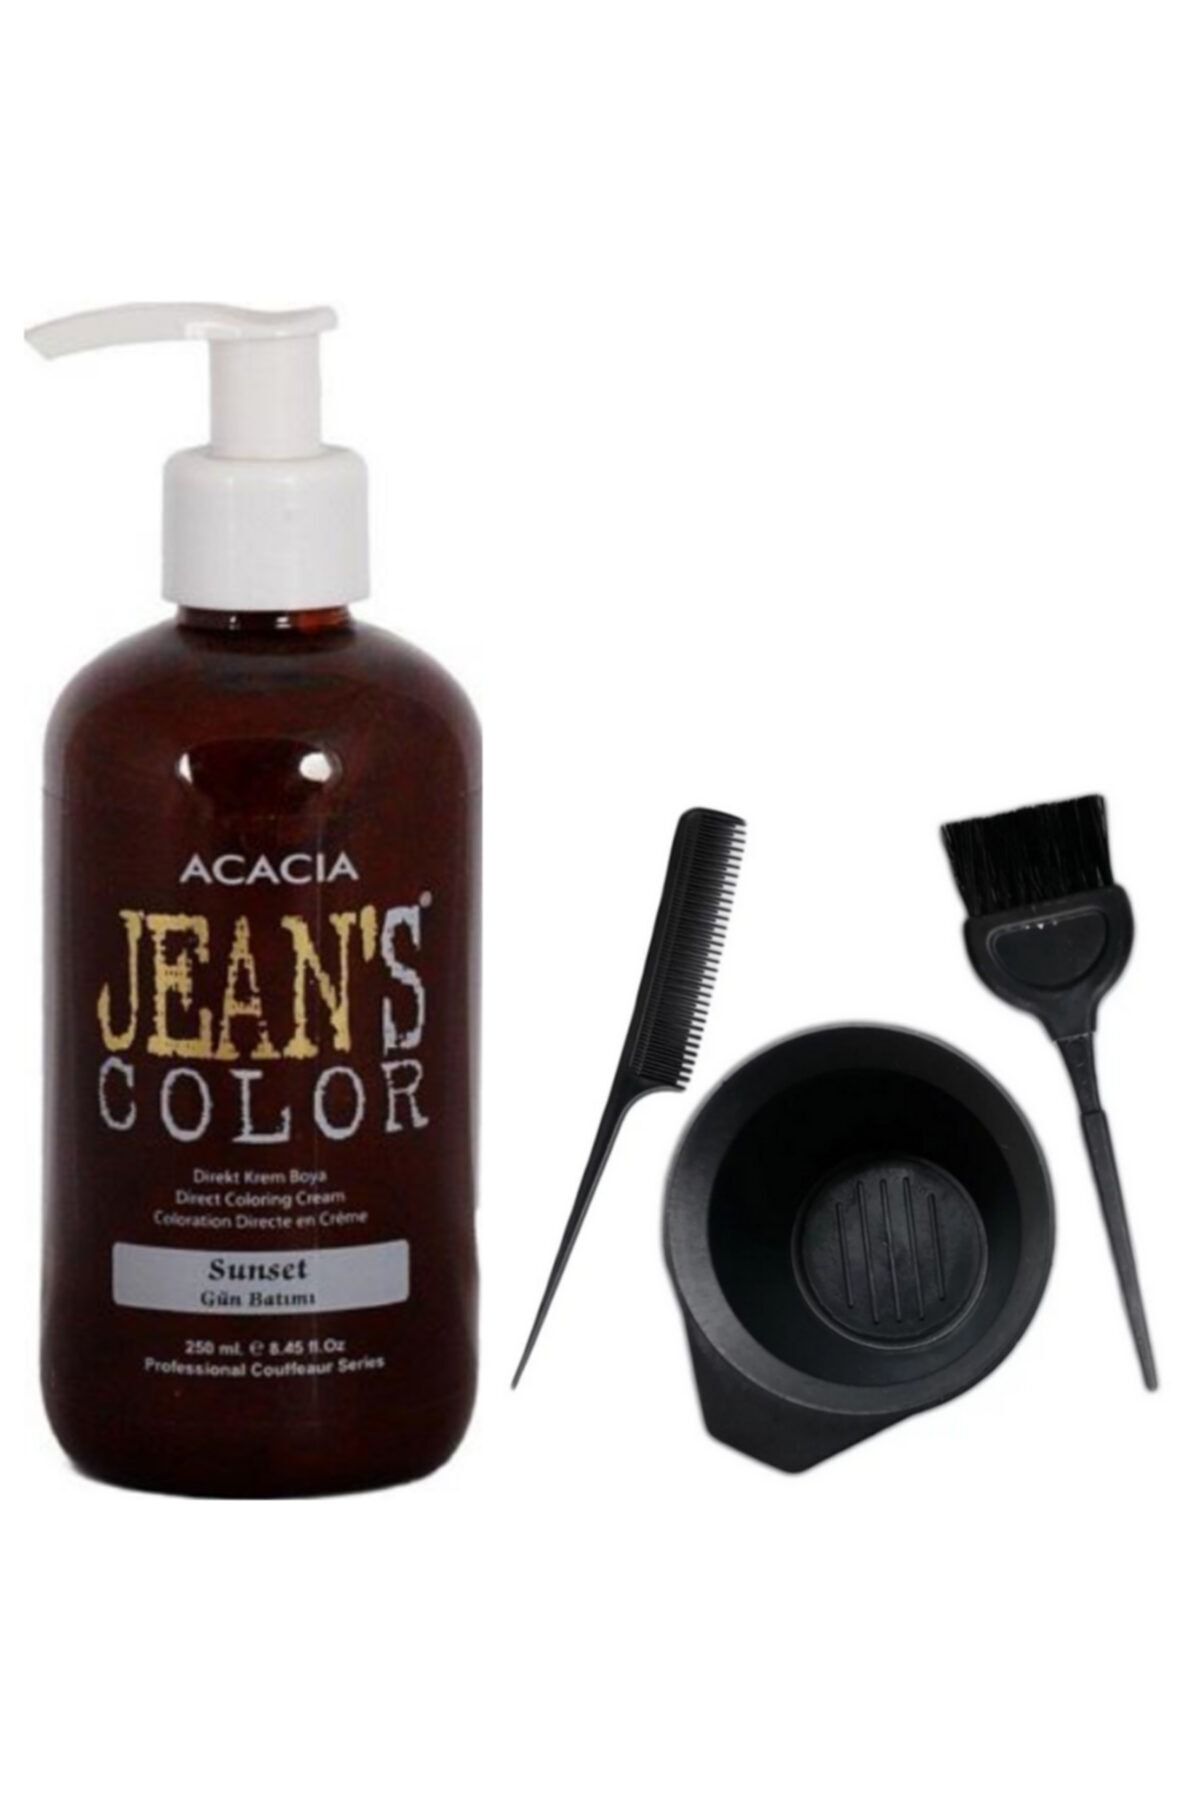 Acacia Jeans Color Saç Boyası Gün Batımı 250 Ml Ve Fluweel Saç Boya Kabı Seti